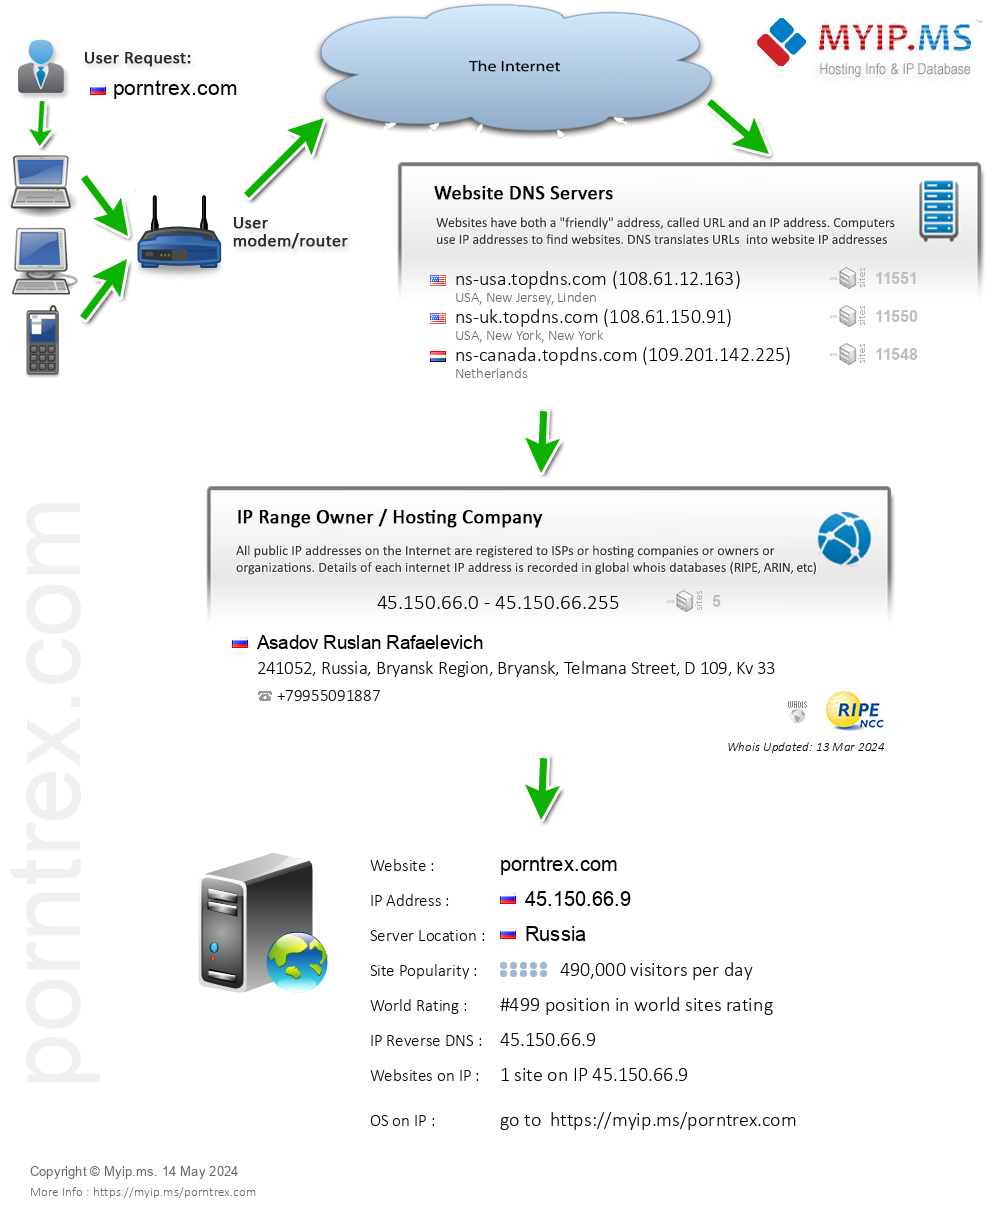 Porntrex.com - Website Hosting Visual IP Diagram